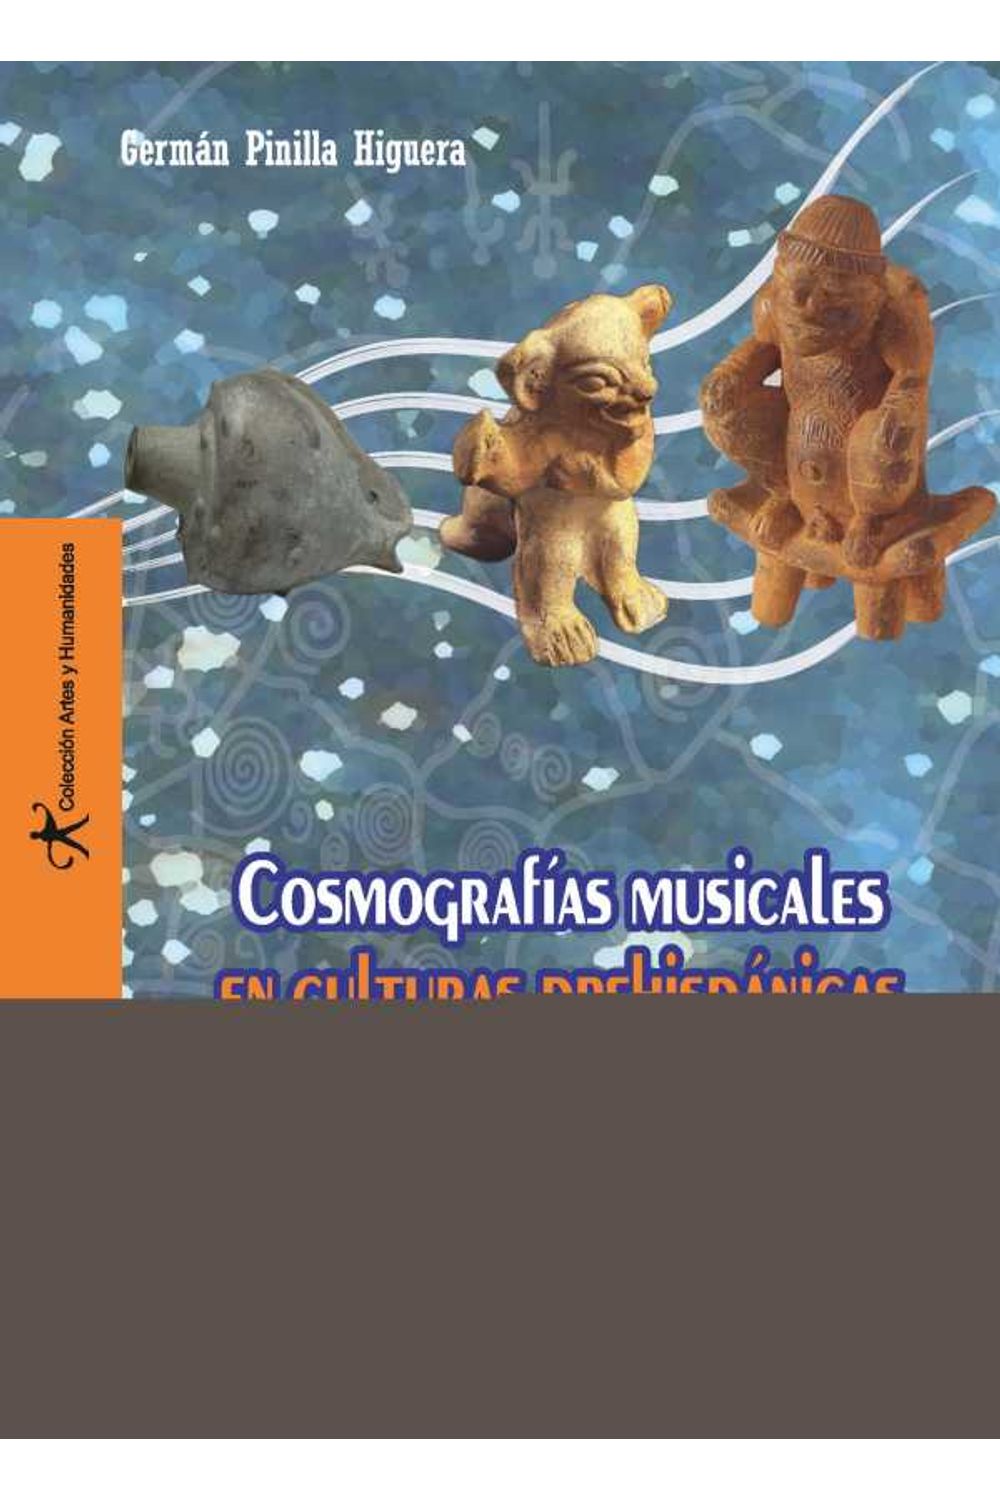 bw-cosmografiacuteas-musicales-prehispaacutenicas-del-suroccidente-colombiano-programa-editorial-universidad-del-valle-9789585164314